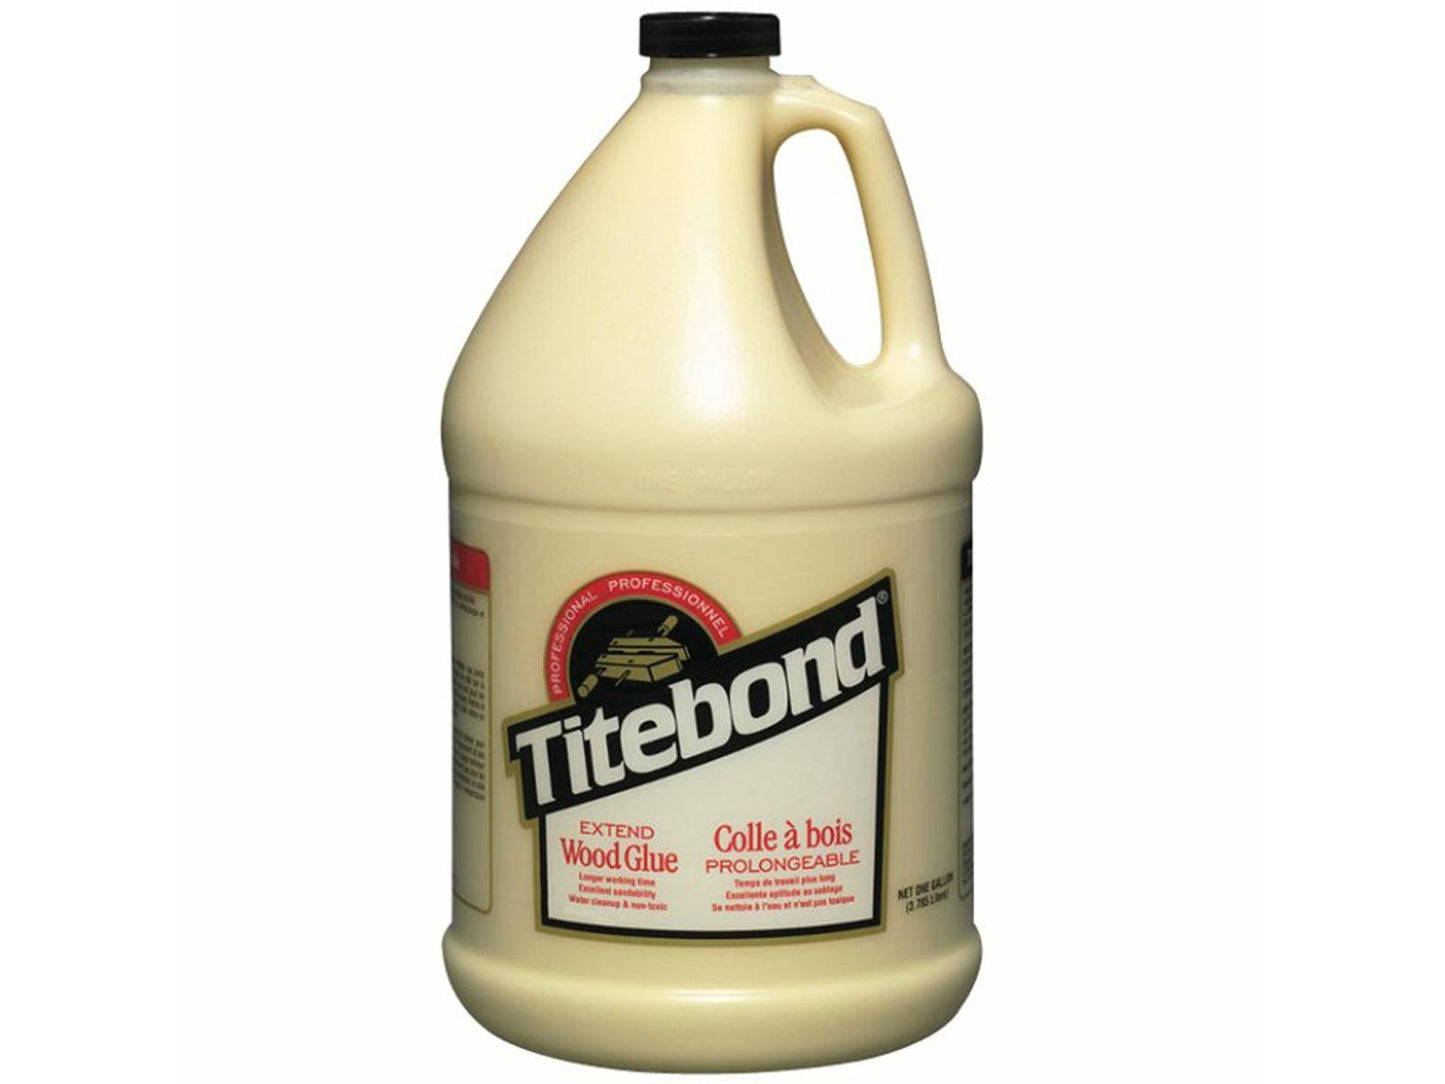 Titebond 9106 Extend Wood Glue - 3.8 litre 1Gallon